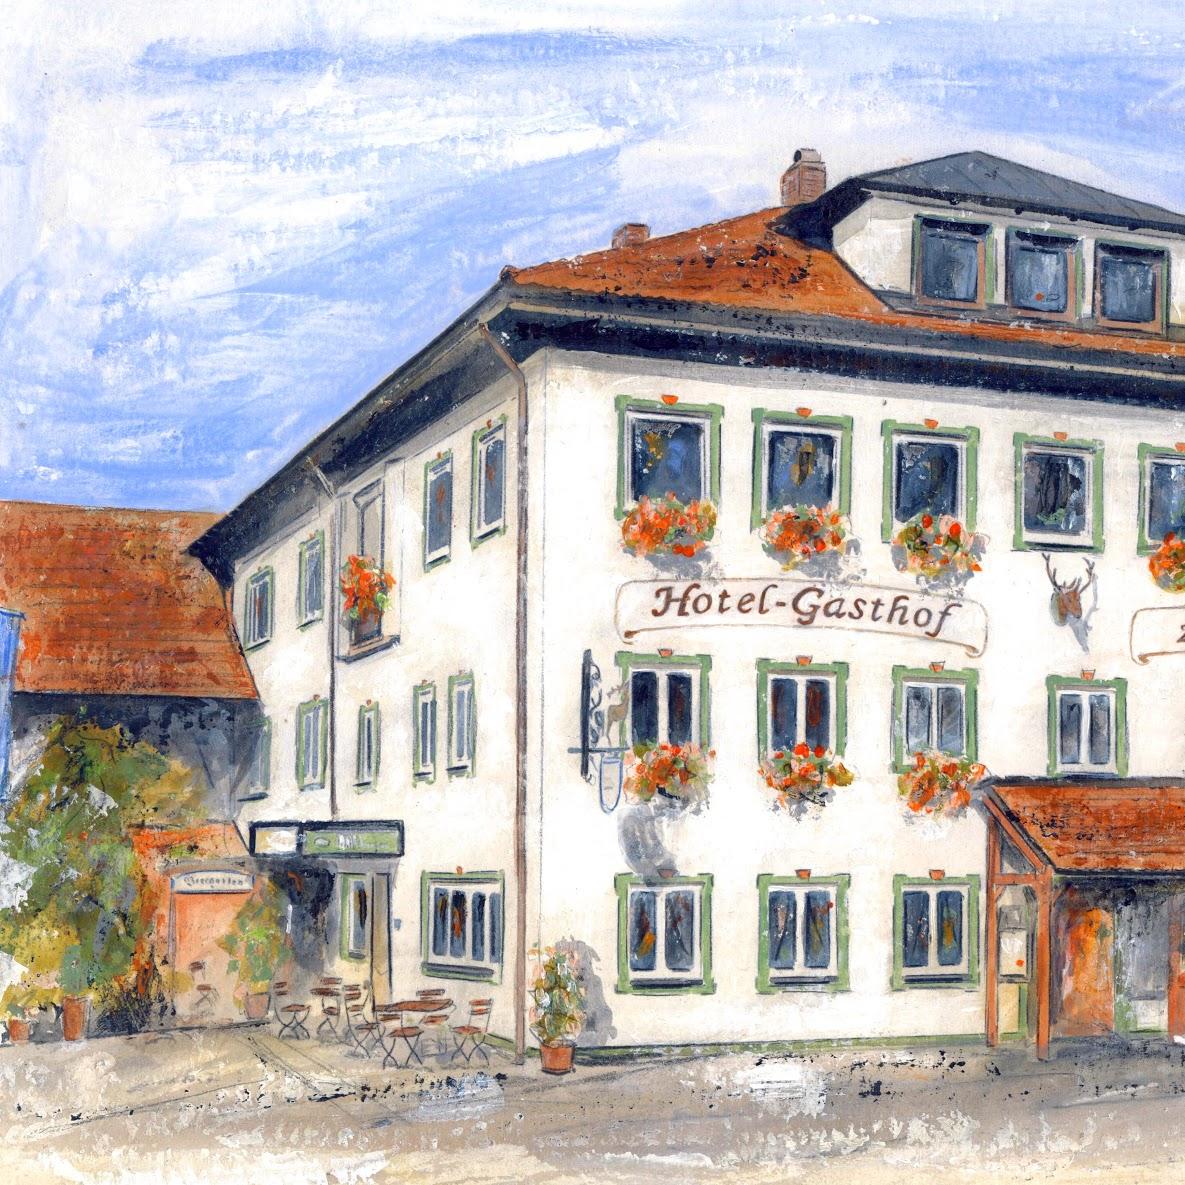 Restaurant "Hotel-Gasthof Zum Hirsch" in  Marktoberdorf